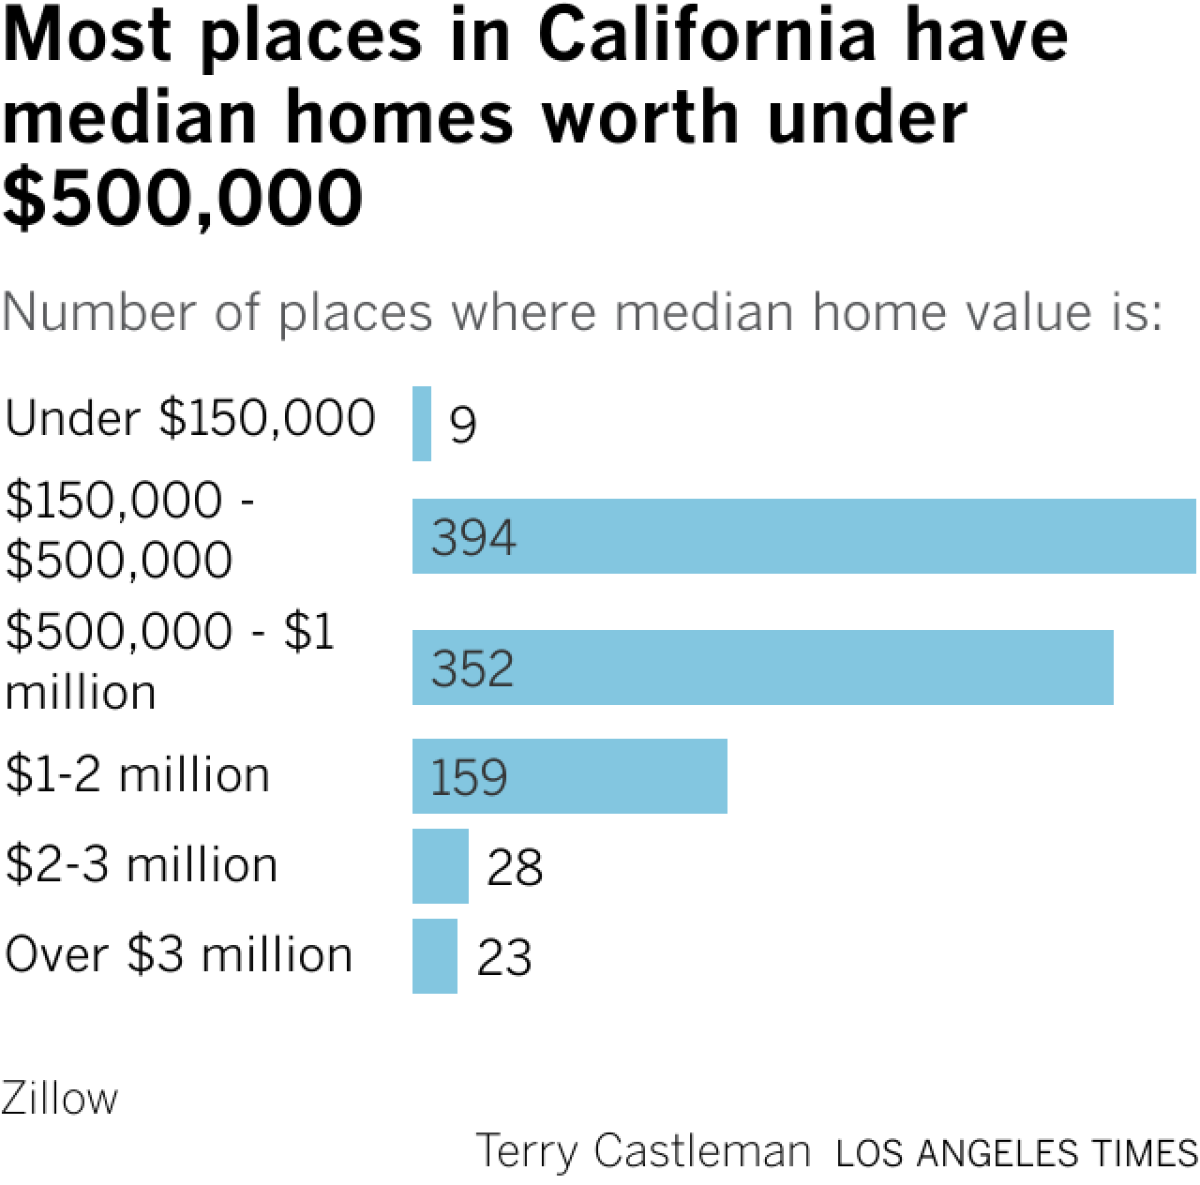 El gráfico muestra que la mayoría de los lugares en California tienen un valor medio de vivienda entre $150,000 y $500,000.